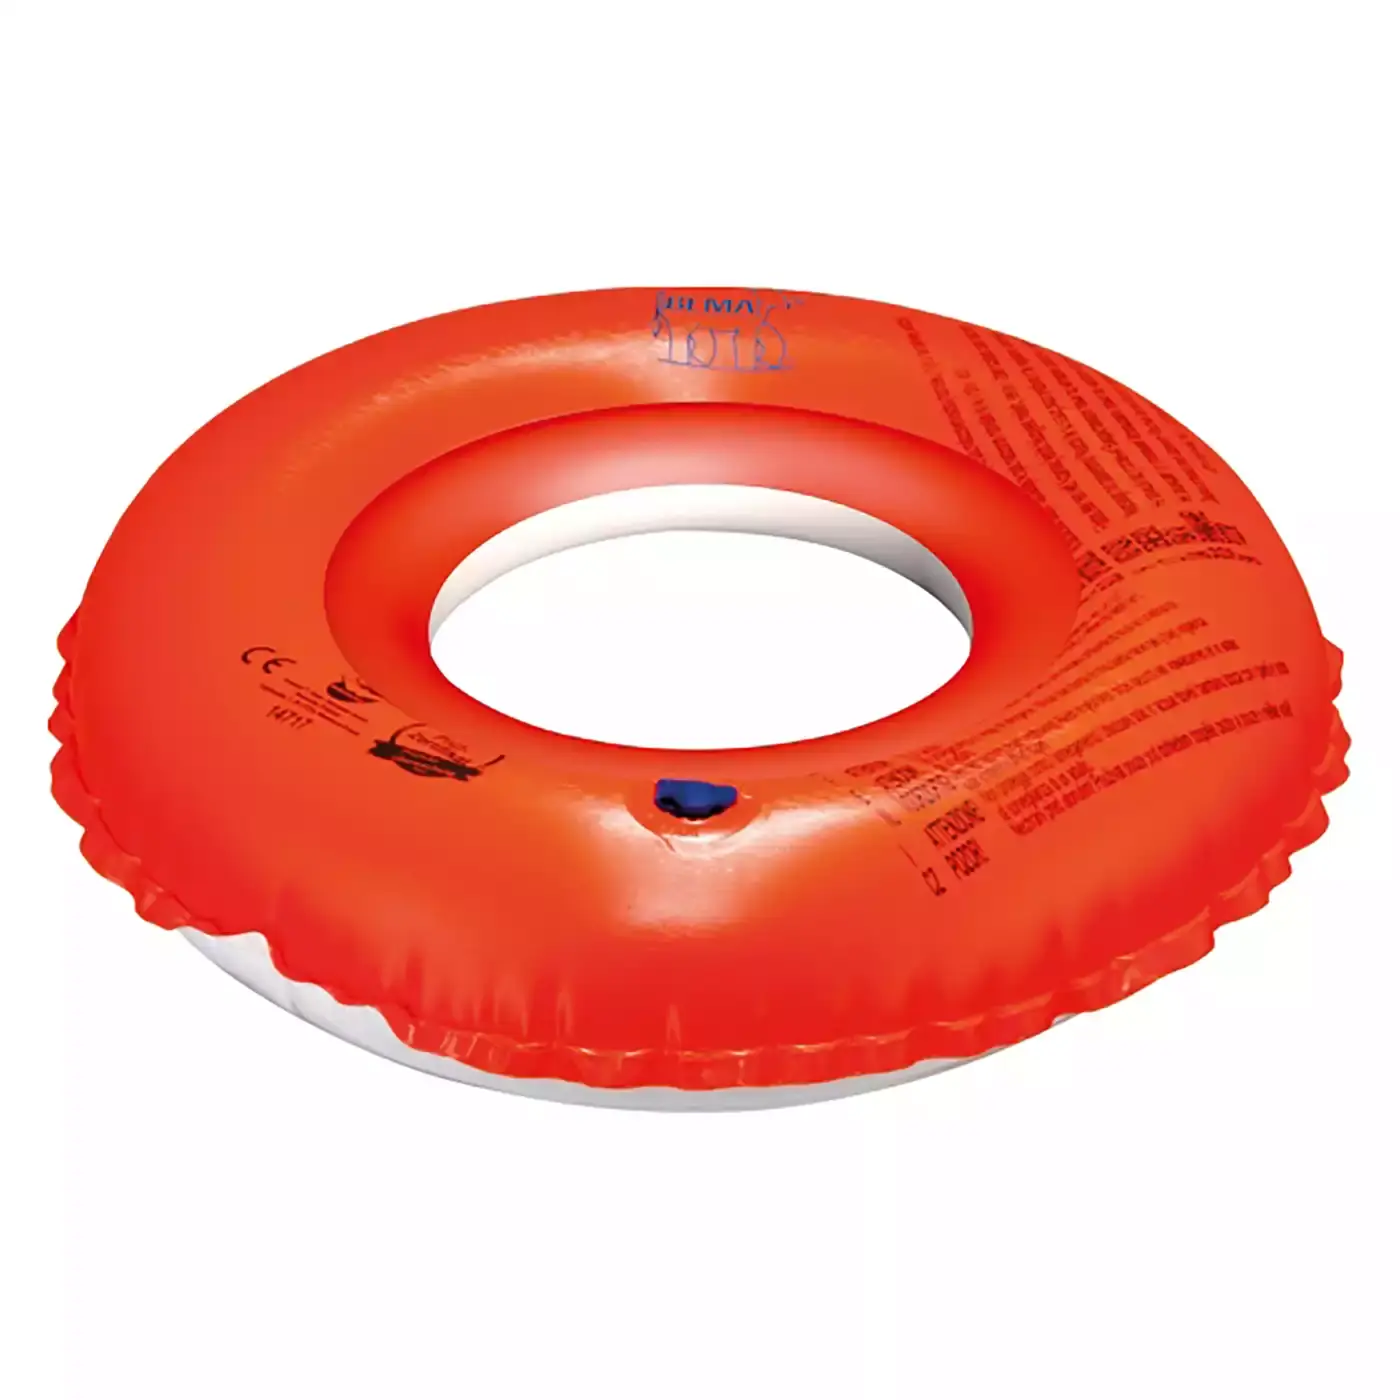 Schwimmring Bema Orange 2000573279108 1